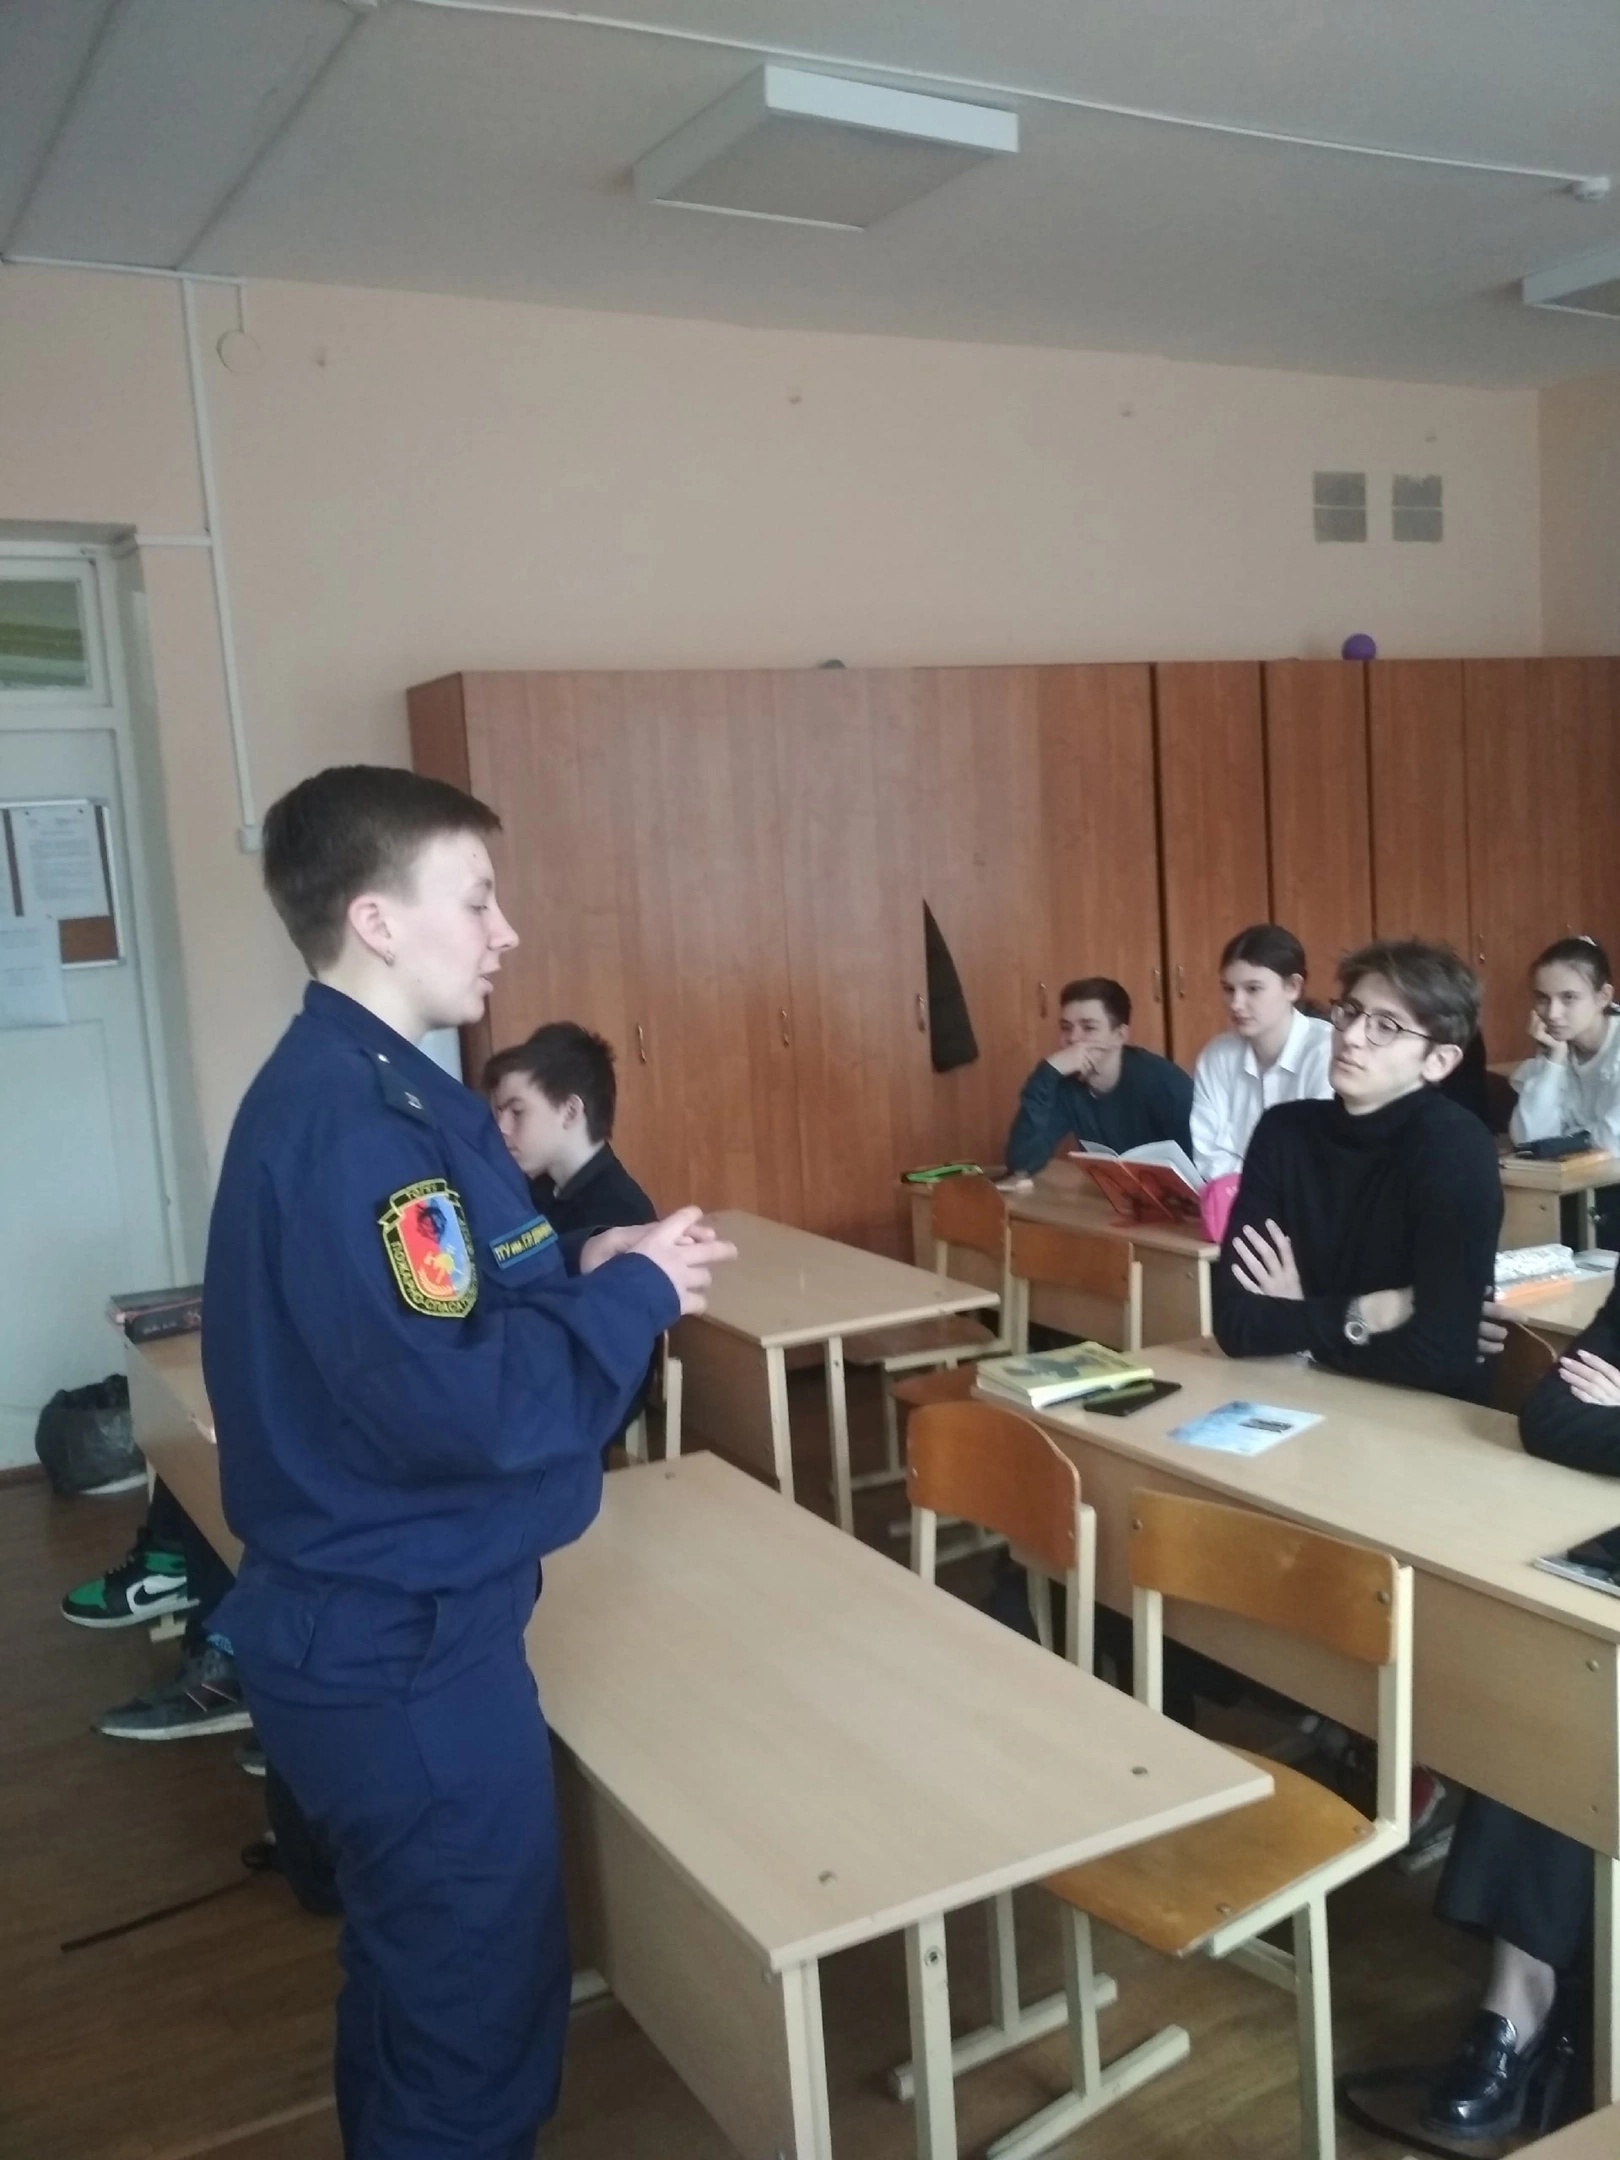 В школах г. Моршанска и г. Котовска прошли информационные встречи студентов СПО "Пожарная безопасность" Державинского университета